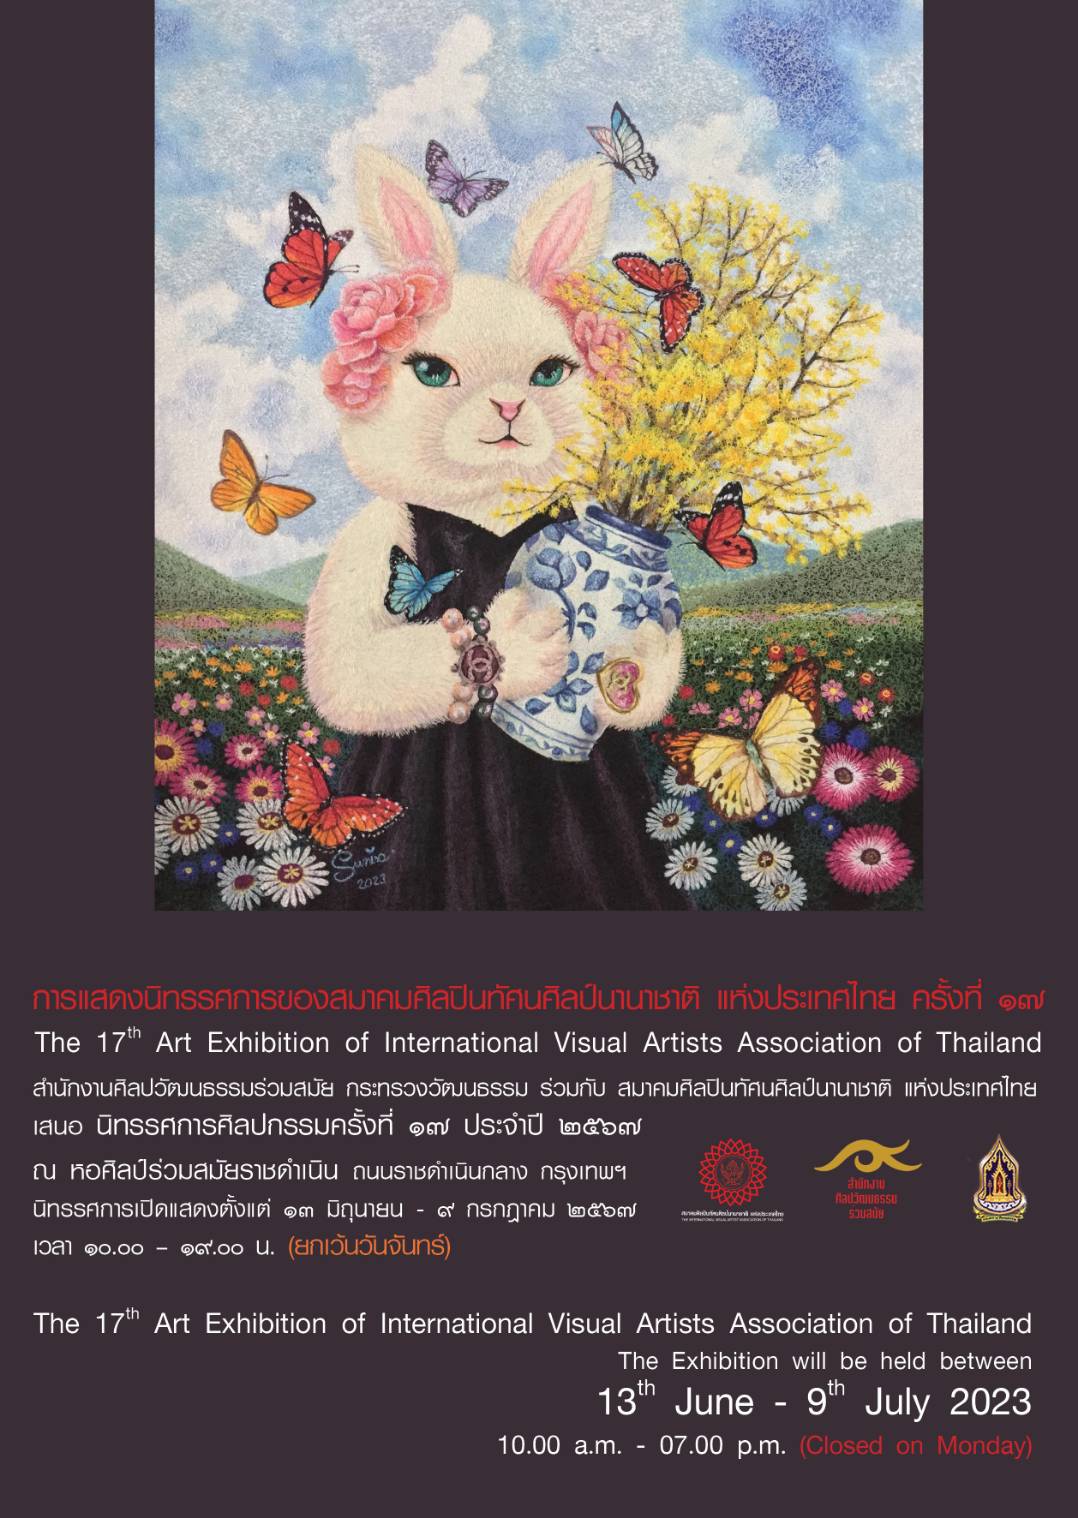 ข่าวอีเว้นท์ - นิทรรศการ “ศิลปกรรมของสมาคมศิลปินทัศนศิลป์นานาชาติ แห่งประเทศไทย ครั้งที่ 17” 